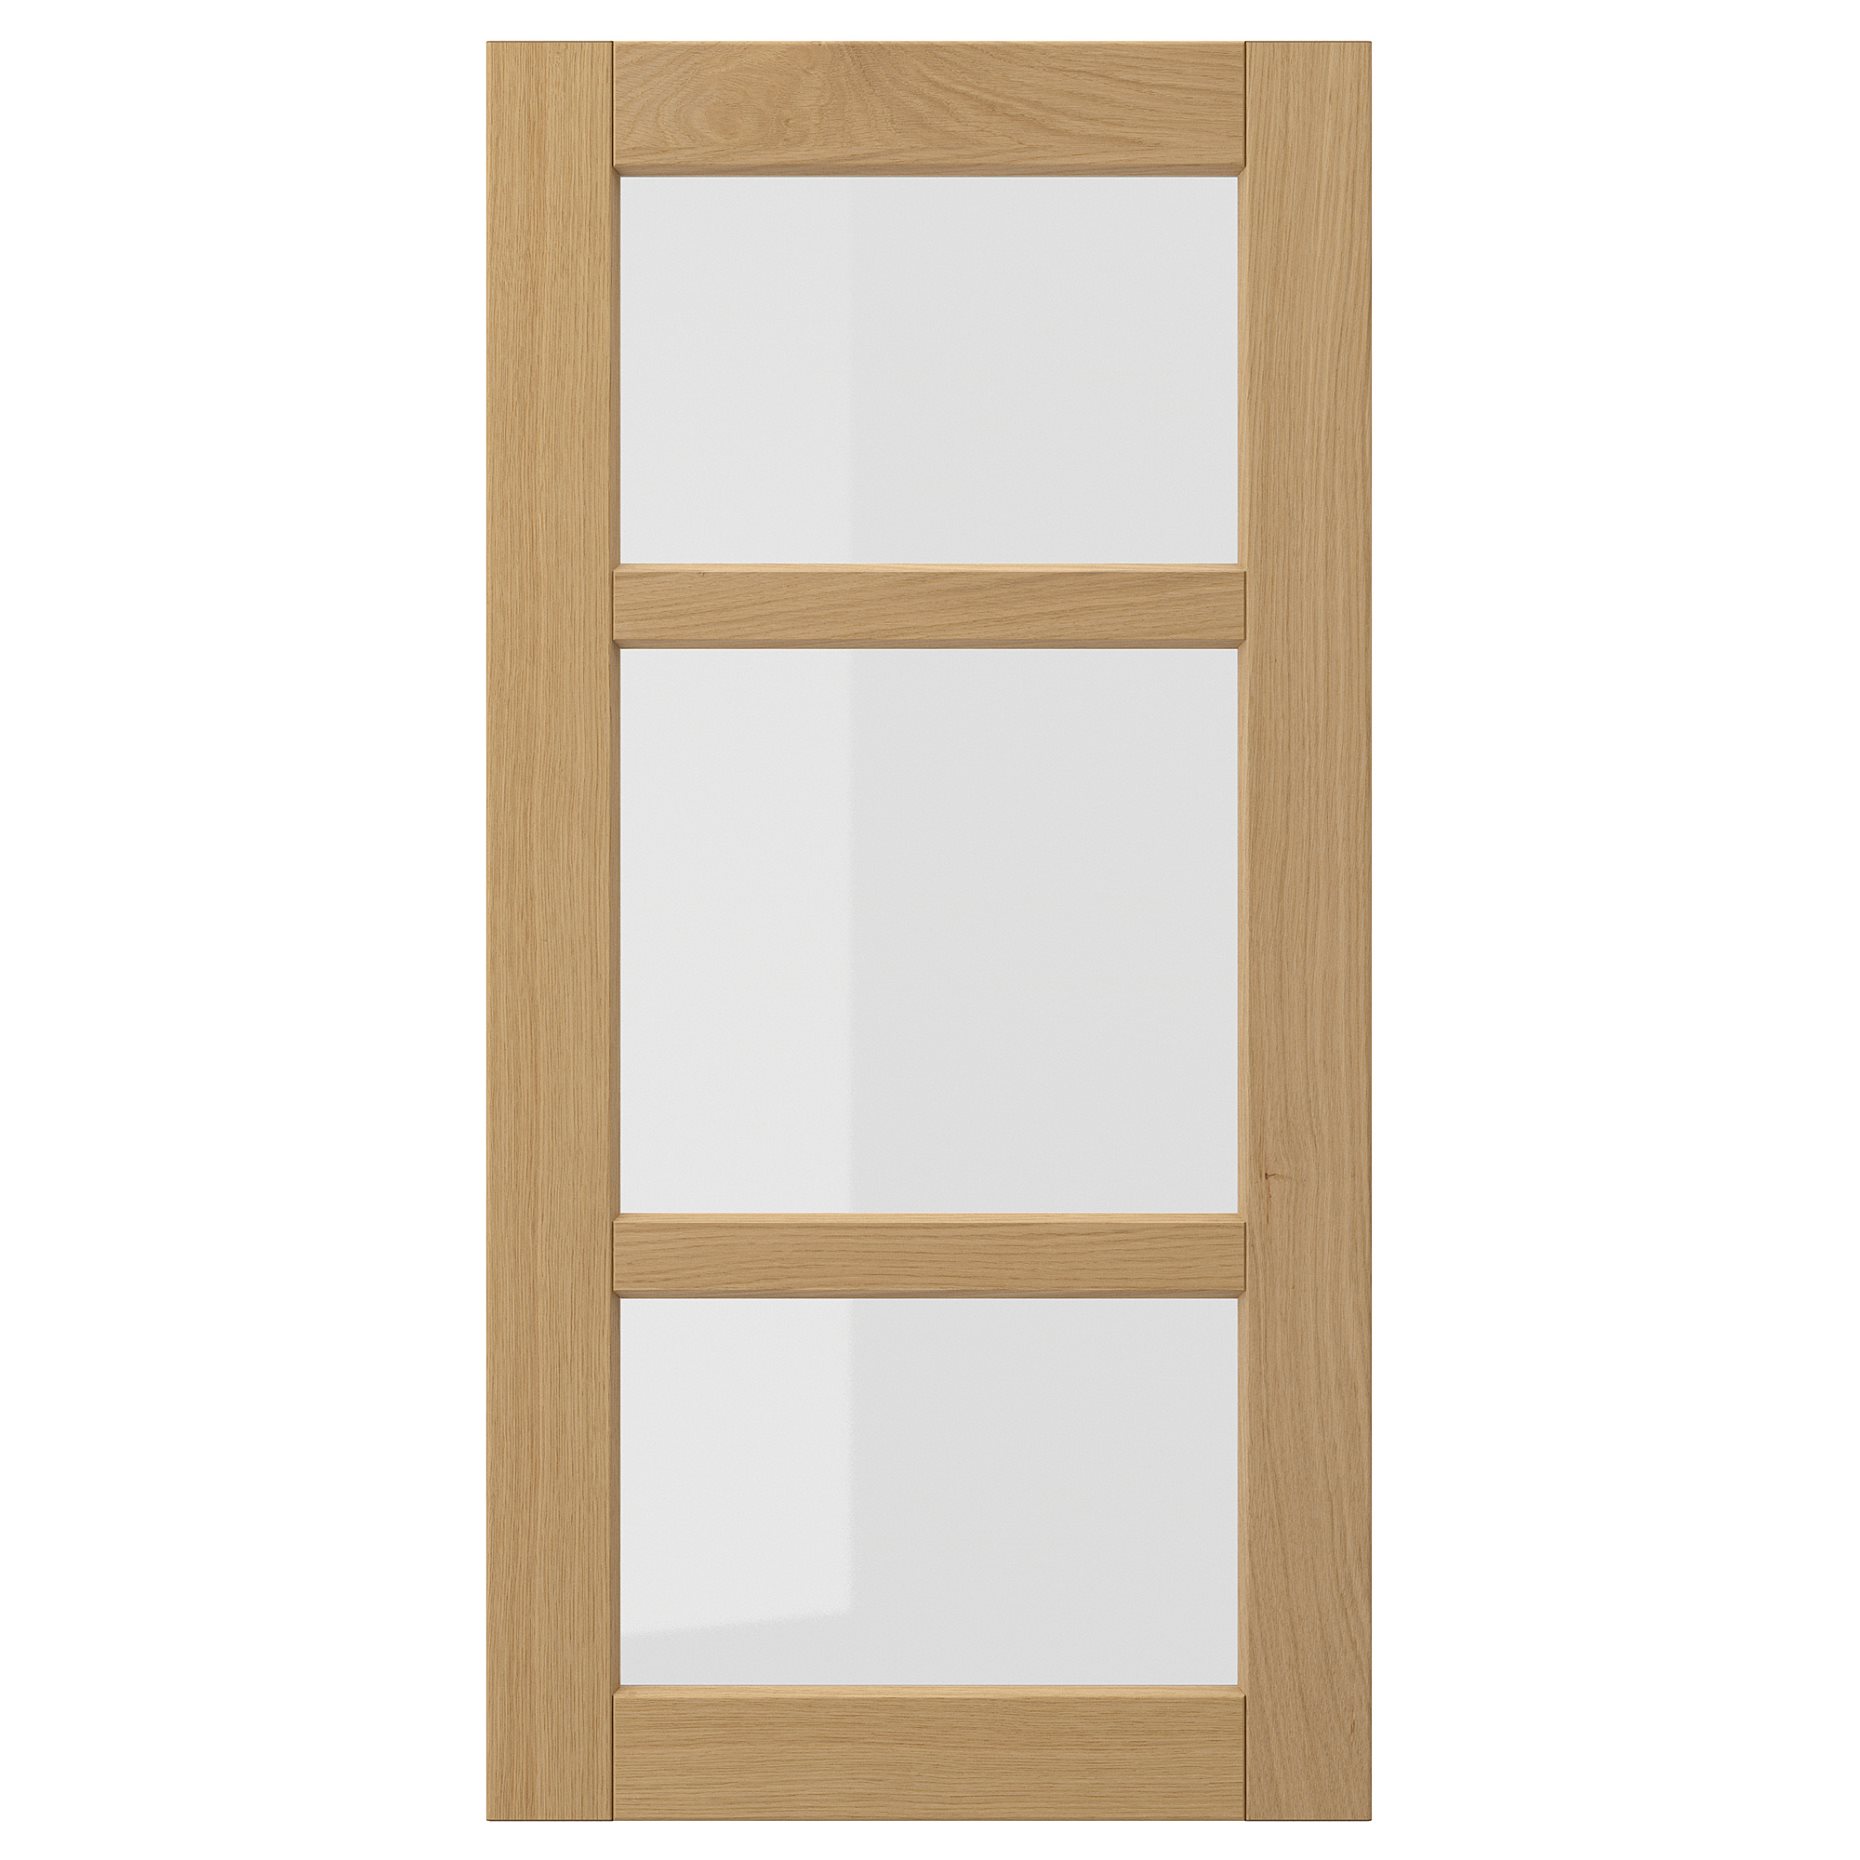 FORSBACKA, glass door, 40x80 cm, 905.652.59